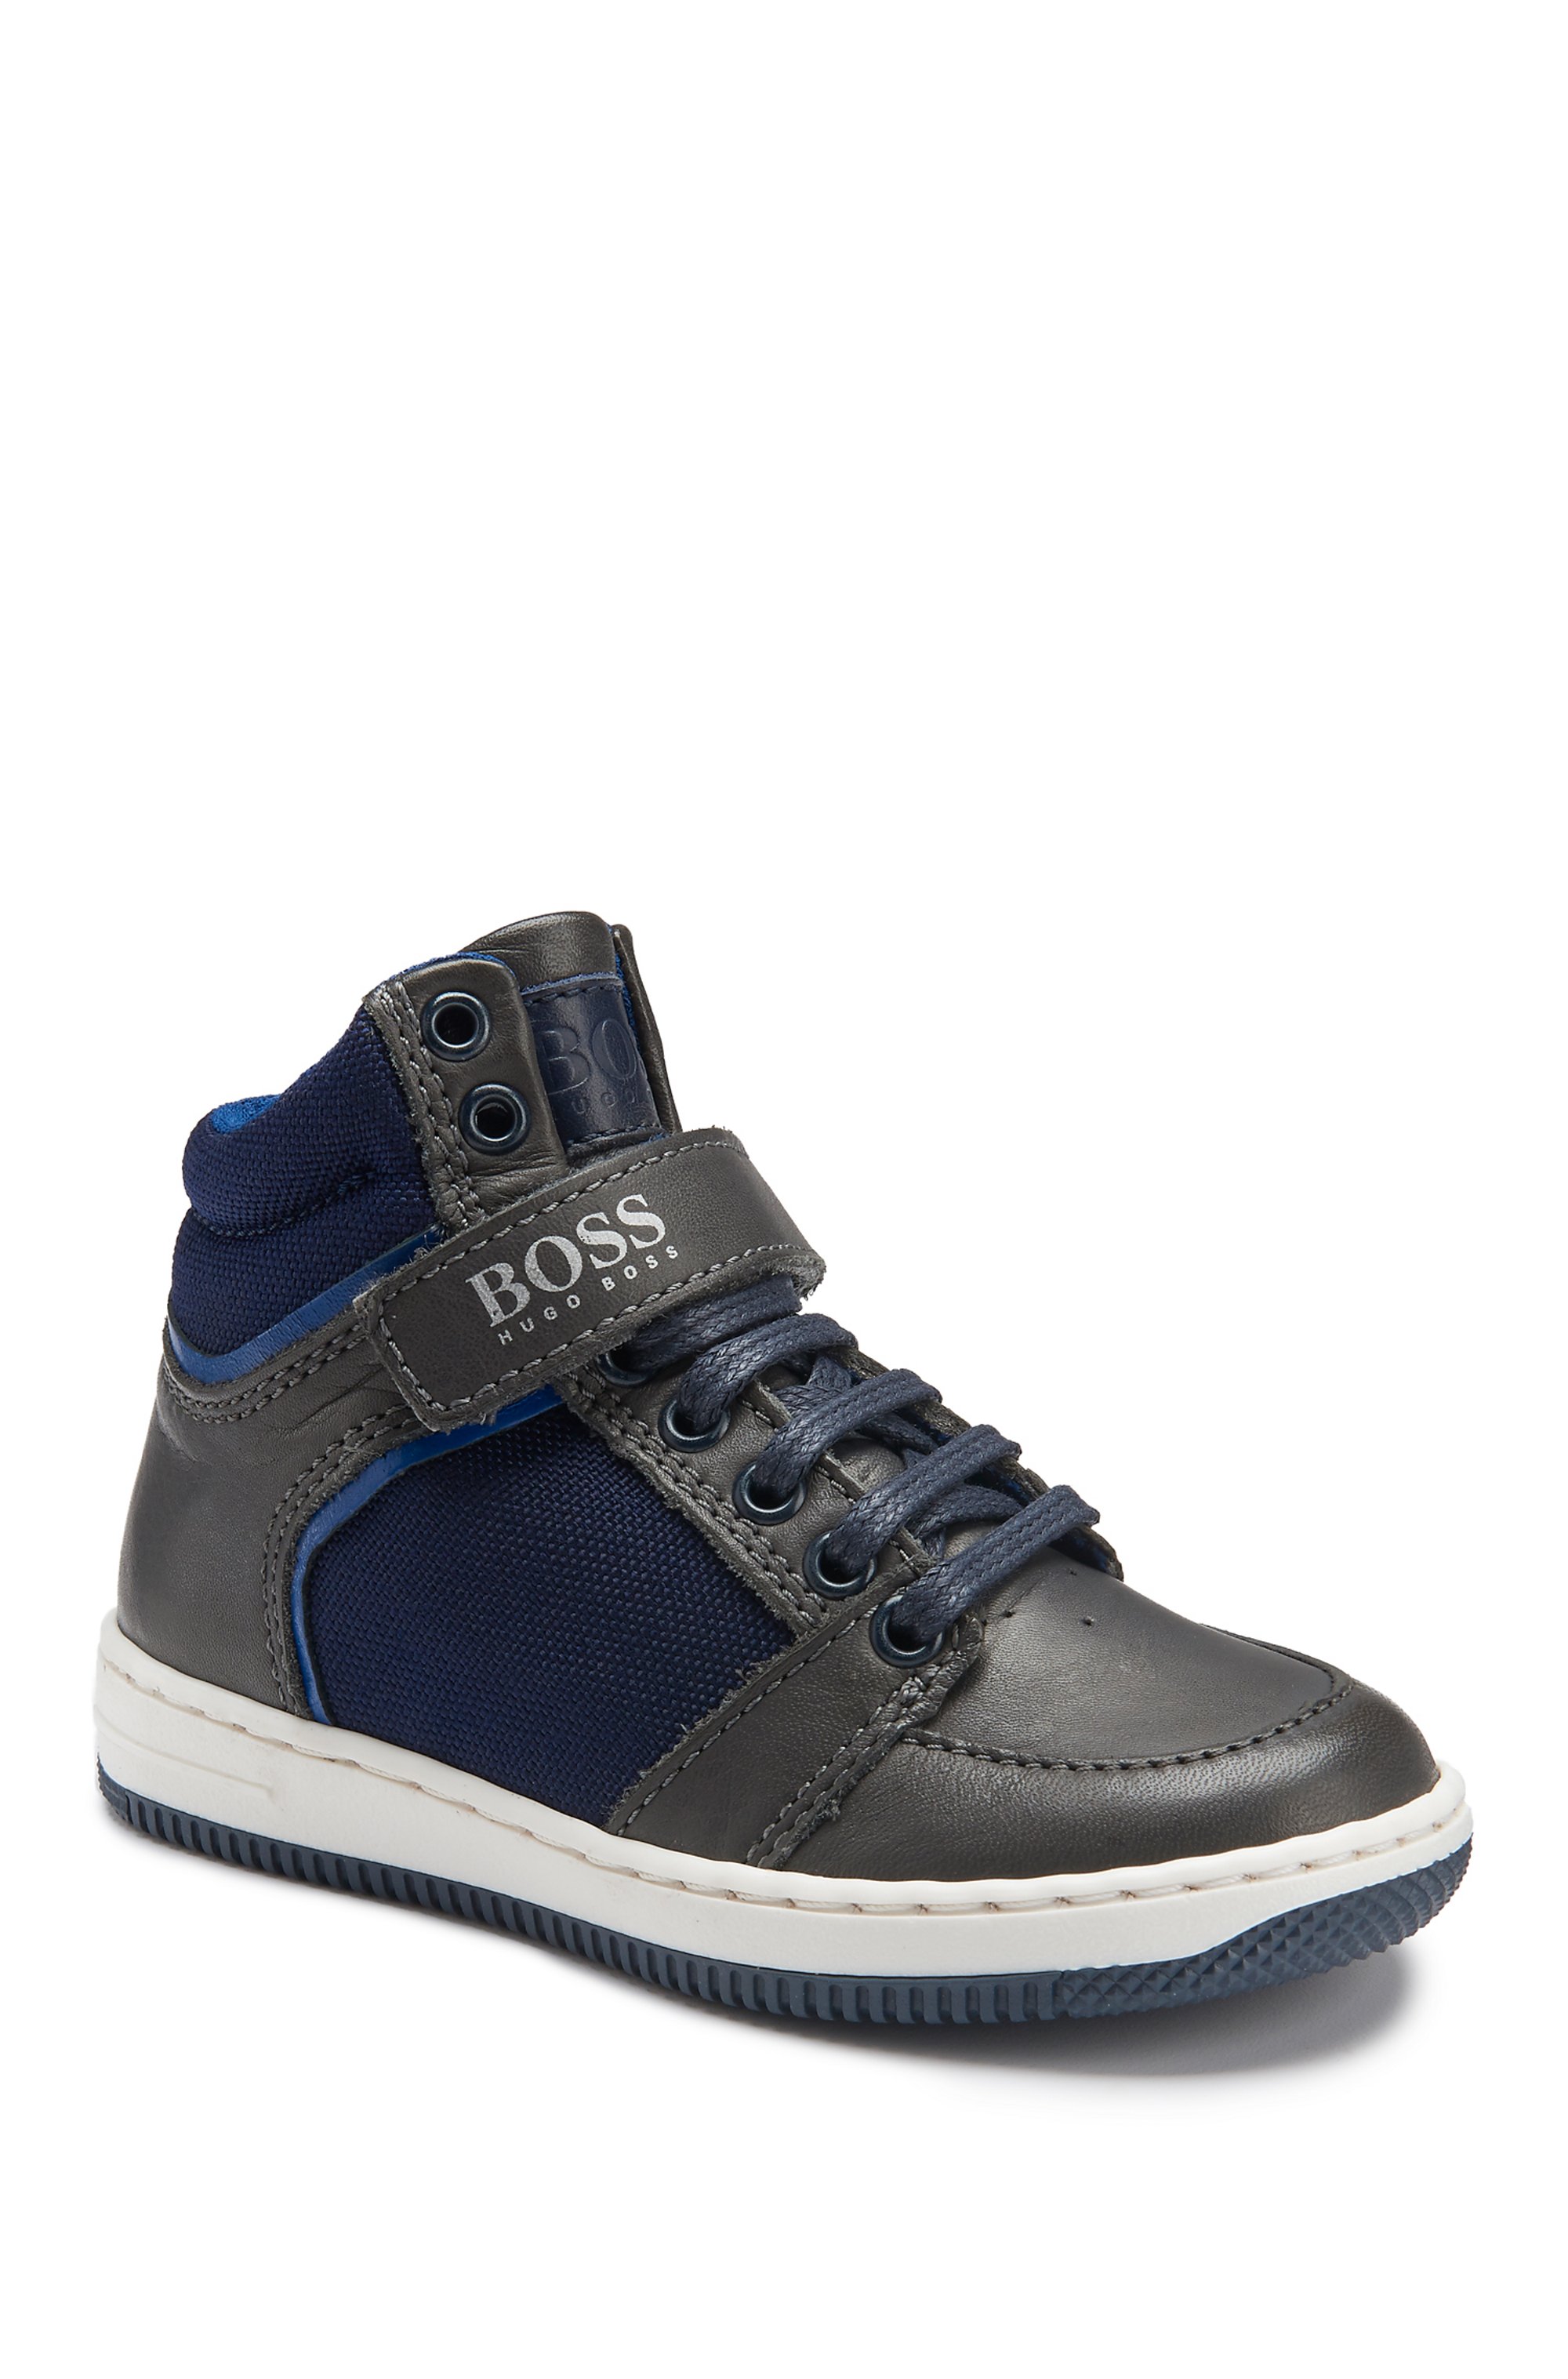 Kids' High Top Leather Sneakers | J29123, Dark Blue